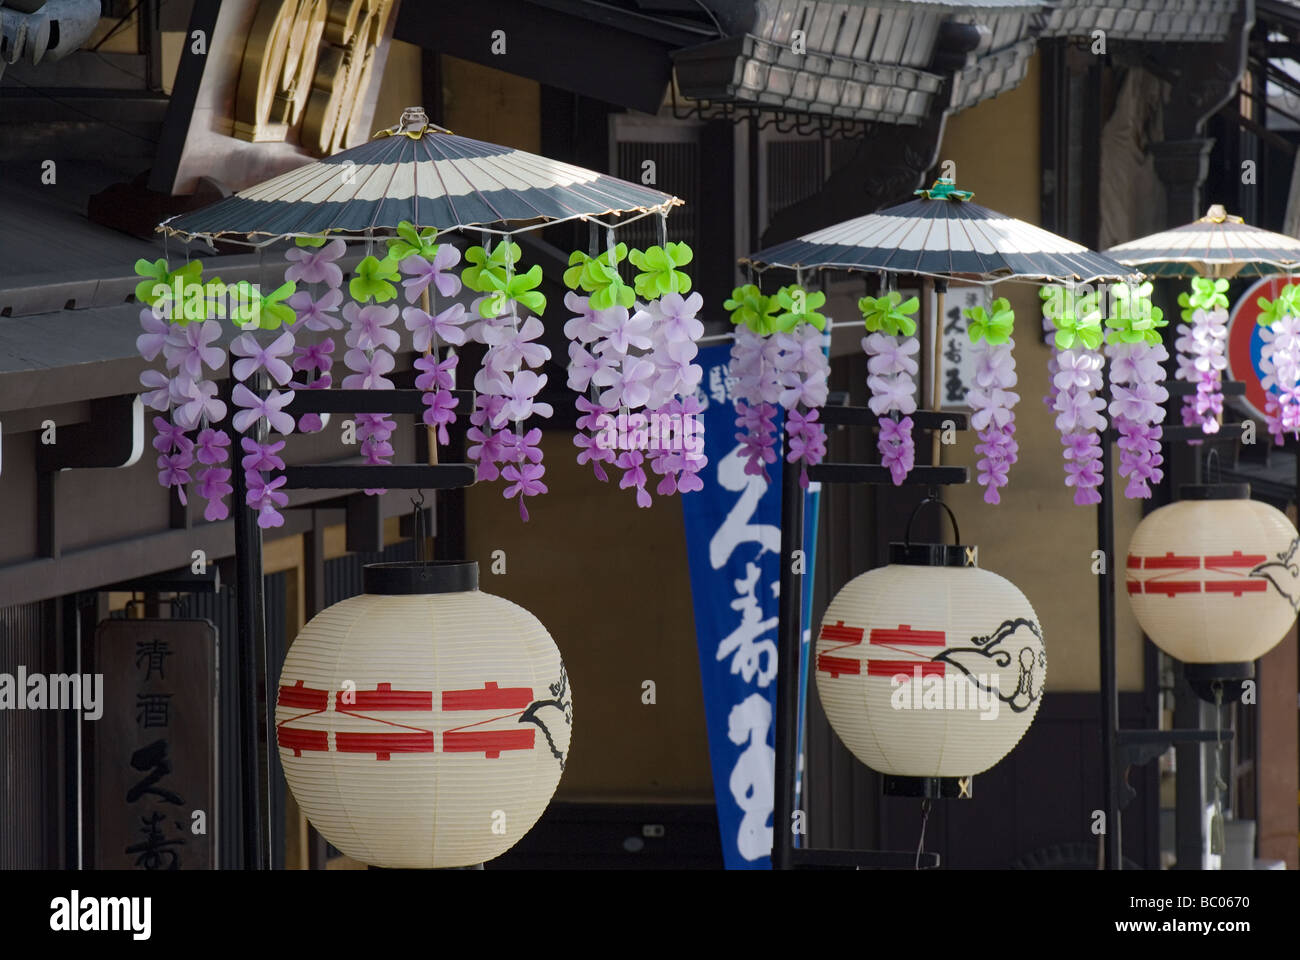 Lanternes de papier traditionnel décoré de fleurs avec une ligne de parapluies dans la rue Takayama Japon pendant la fête du printemps Banque D'Images